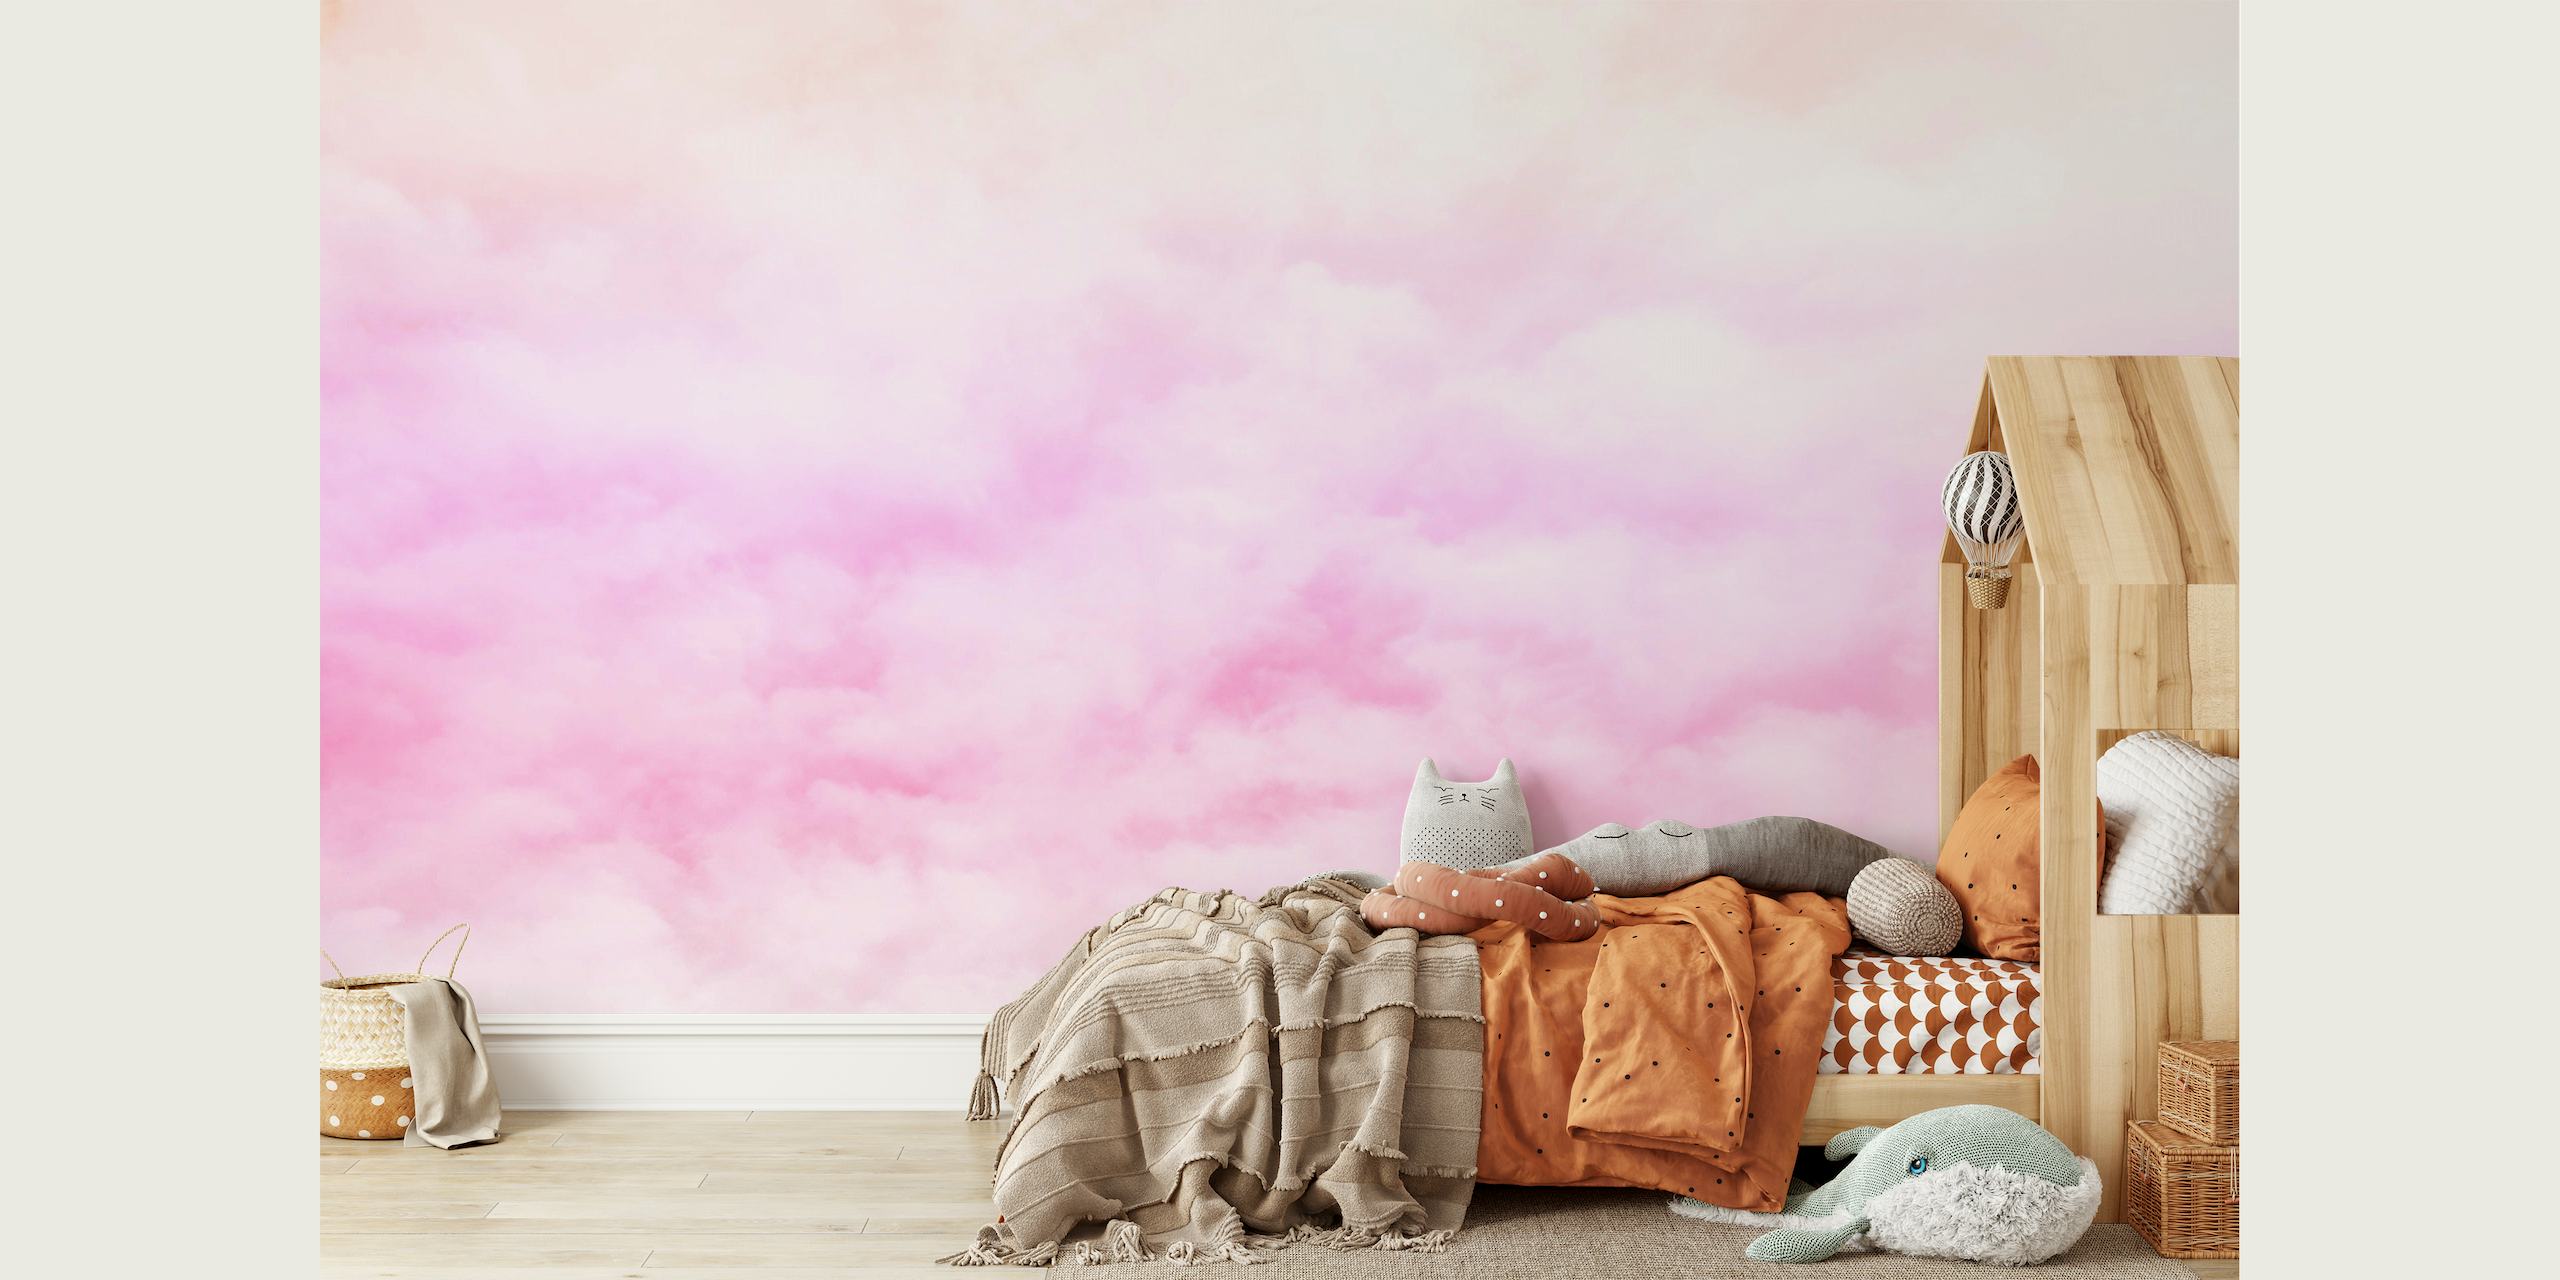 Sutil mural de nubes en tonos pastel en rosa y blanco para una decoración de pared tranquila